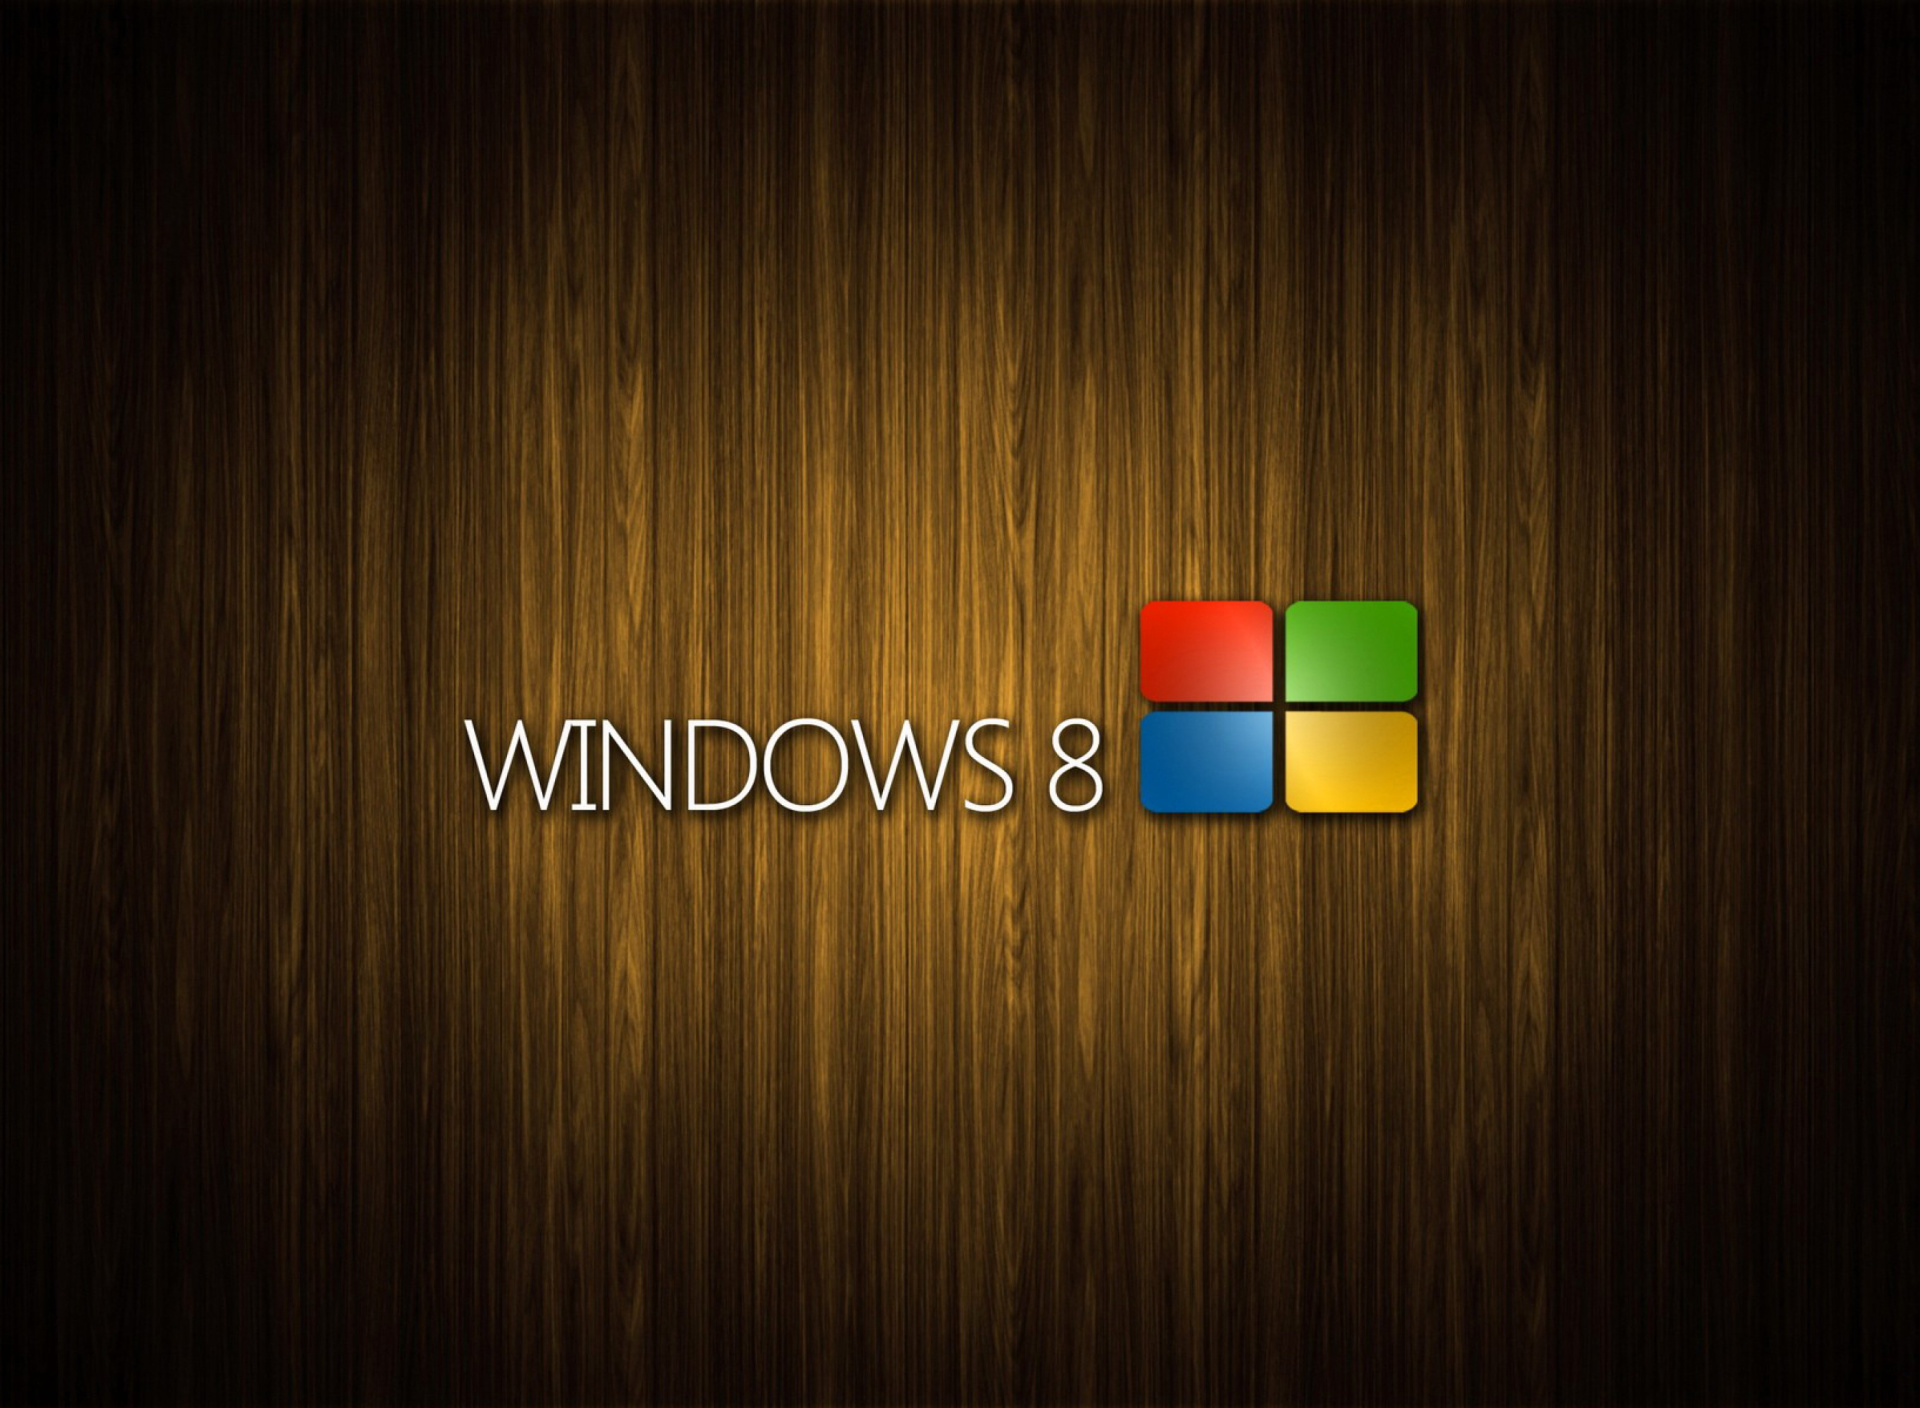 Windows 8 Wooden Emblem wallpaper 1920x1408